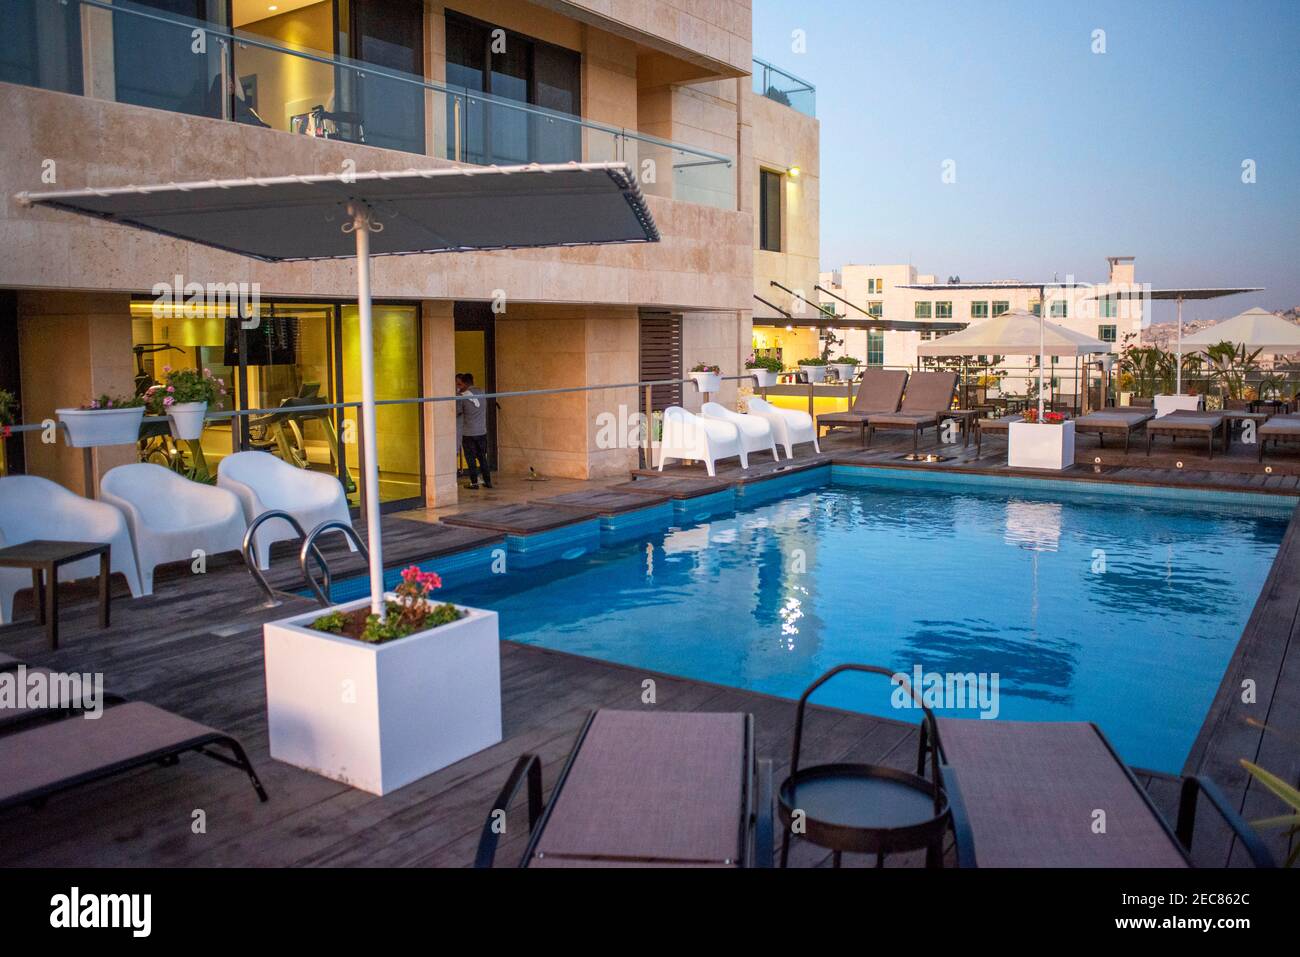 Piscine de la Maison boutique suites Resort hôtel dans la ville d'Amman, capitale de la Jordanie. Quartier de Jabal, Amman Jordanie. Banque D'Images